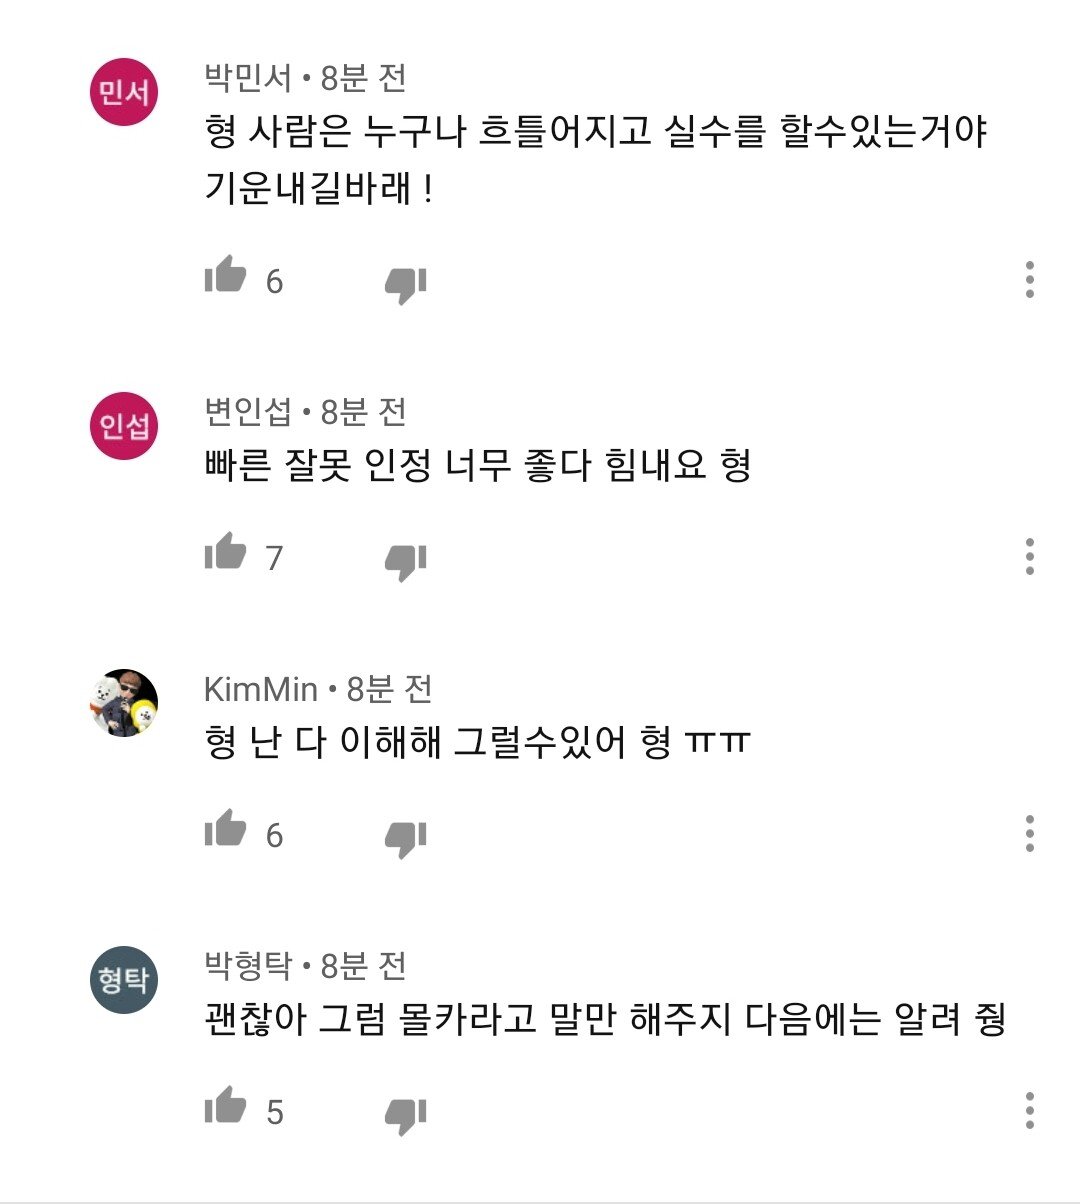 1593615514.jpg 실시간) 송대익 사과영상... 댓글 반응